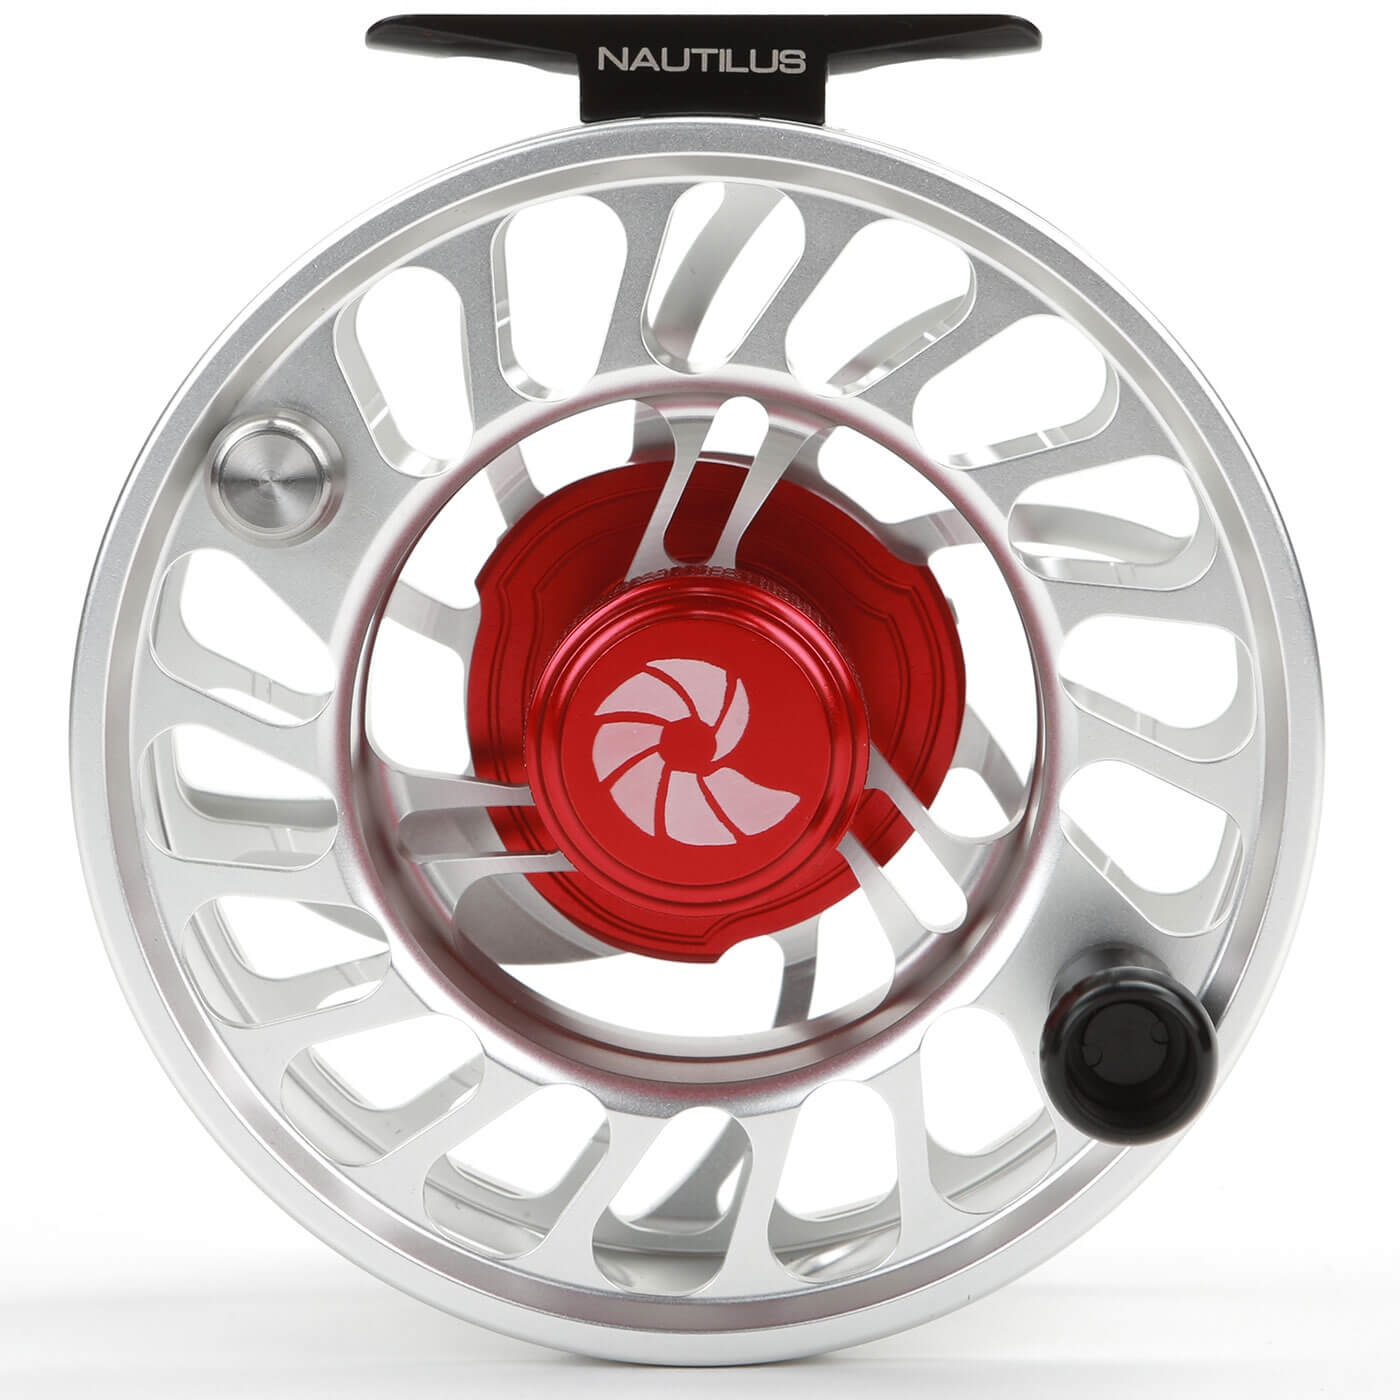 Nautilus Fly Reels - an industry leader in saltwater reels